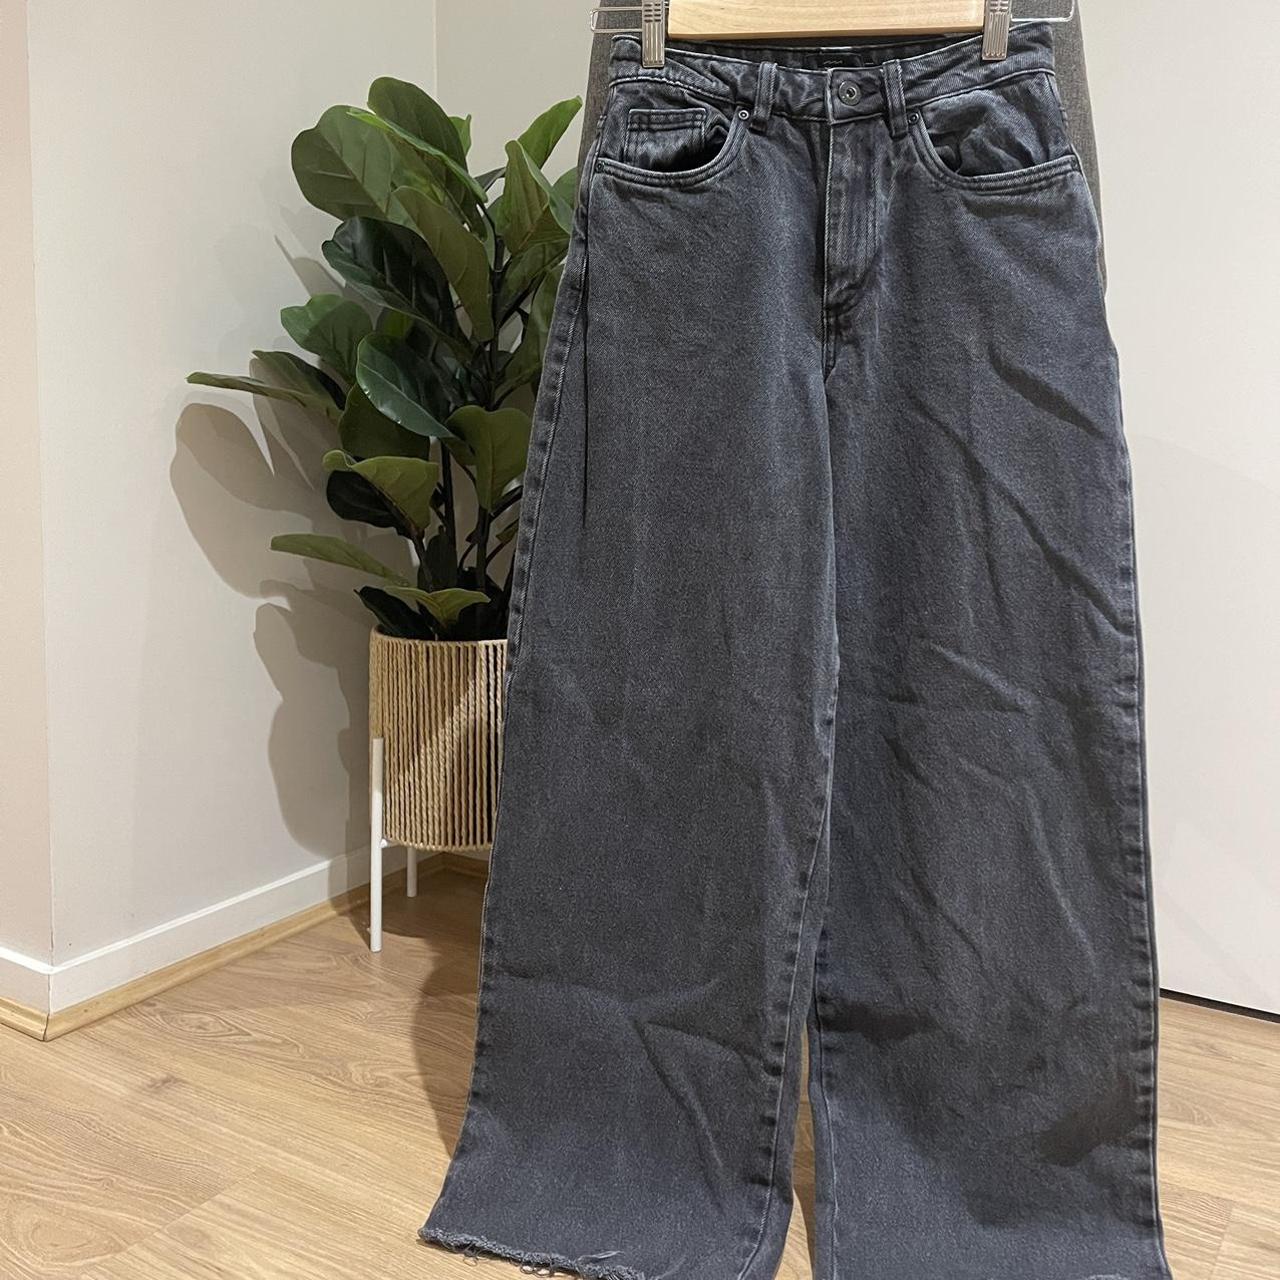 FACTORIE wide leg jeans size - 6 colour -... - Depop